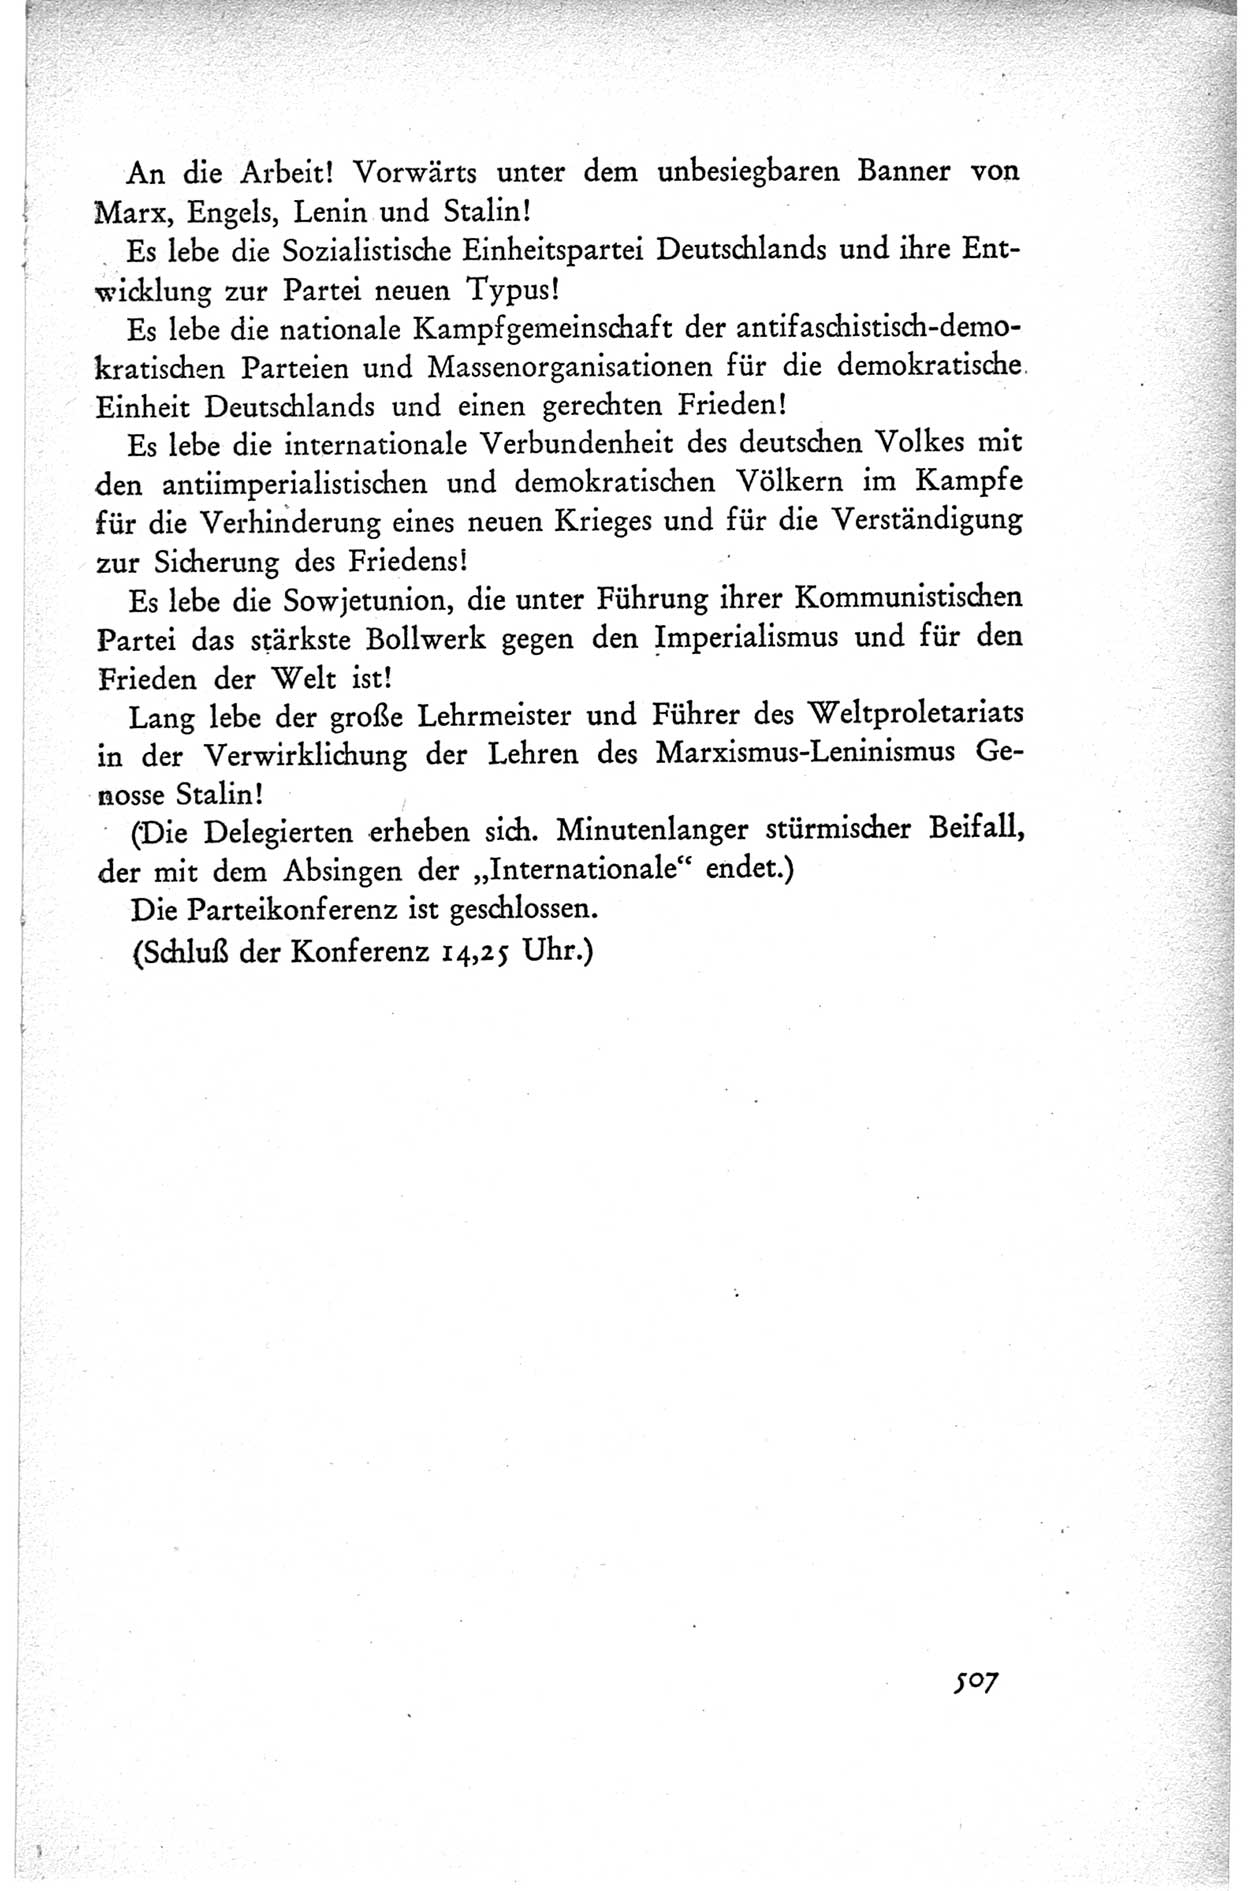 Protokoll der ersten Parteikonferenz der Sozialistischen Einheitspartei Deutschlands (SED) [Sowjetische Besatzungszone (SBZ) Deutschlands] vom 25. bis 28. Januar 1949 im Hause der Deutschen Wirtschaftskommission zu Berlin, Seite 507 (Prot. 1. PK SED SBZ Dtl. 1949, S. 507)